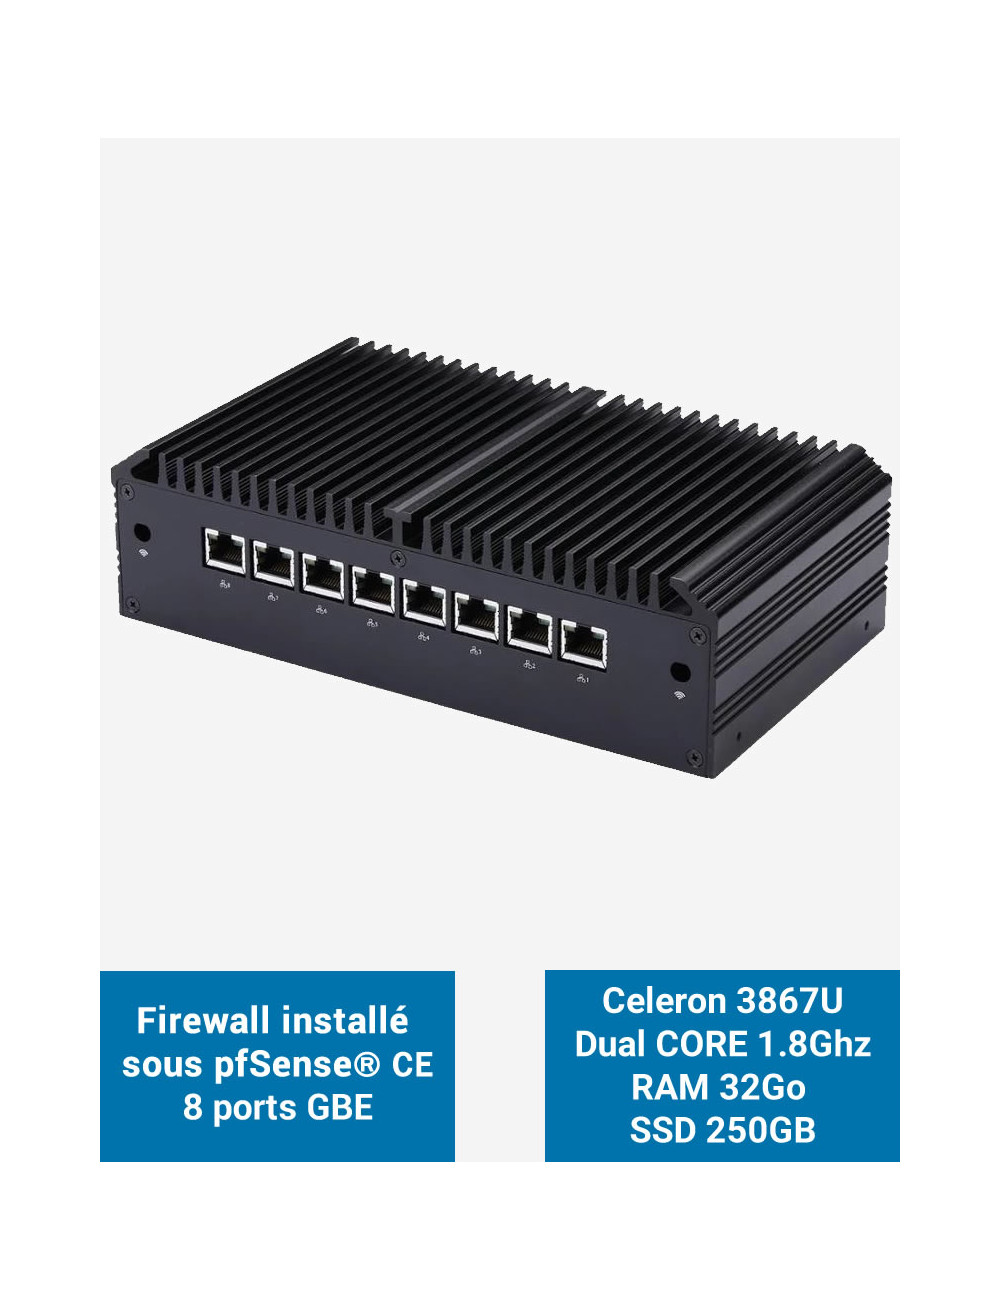 Firewall Q8x Celeron 3867U 8 ports GbE 32GB 250GB